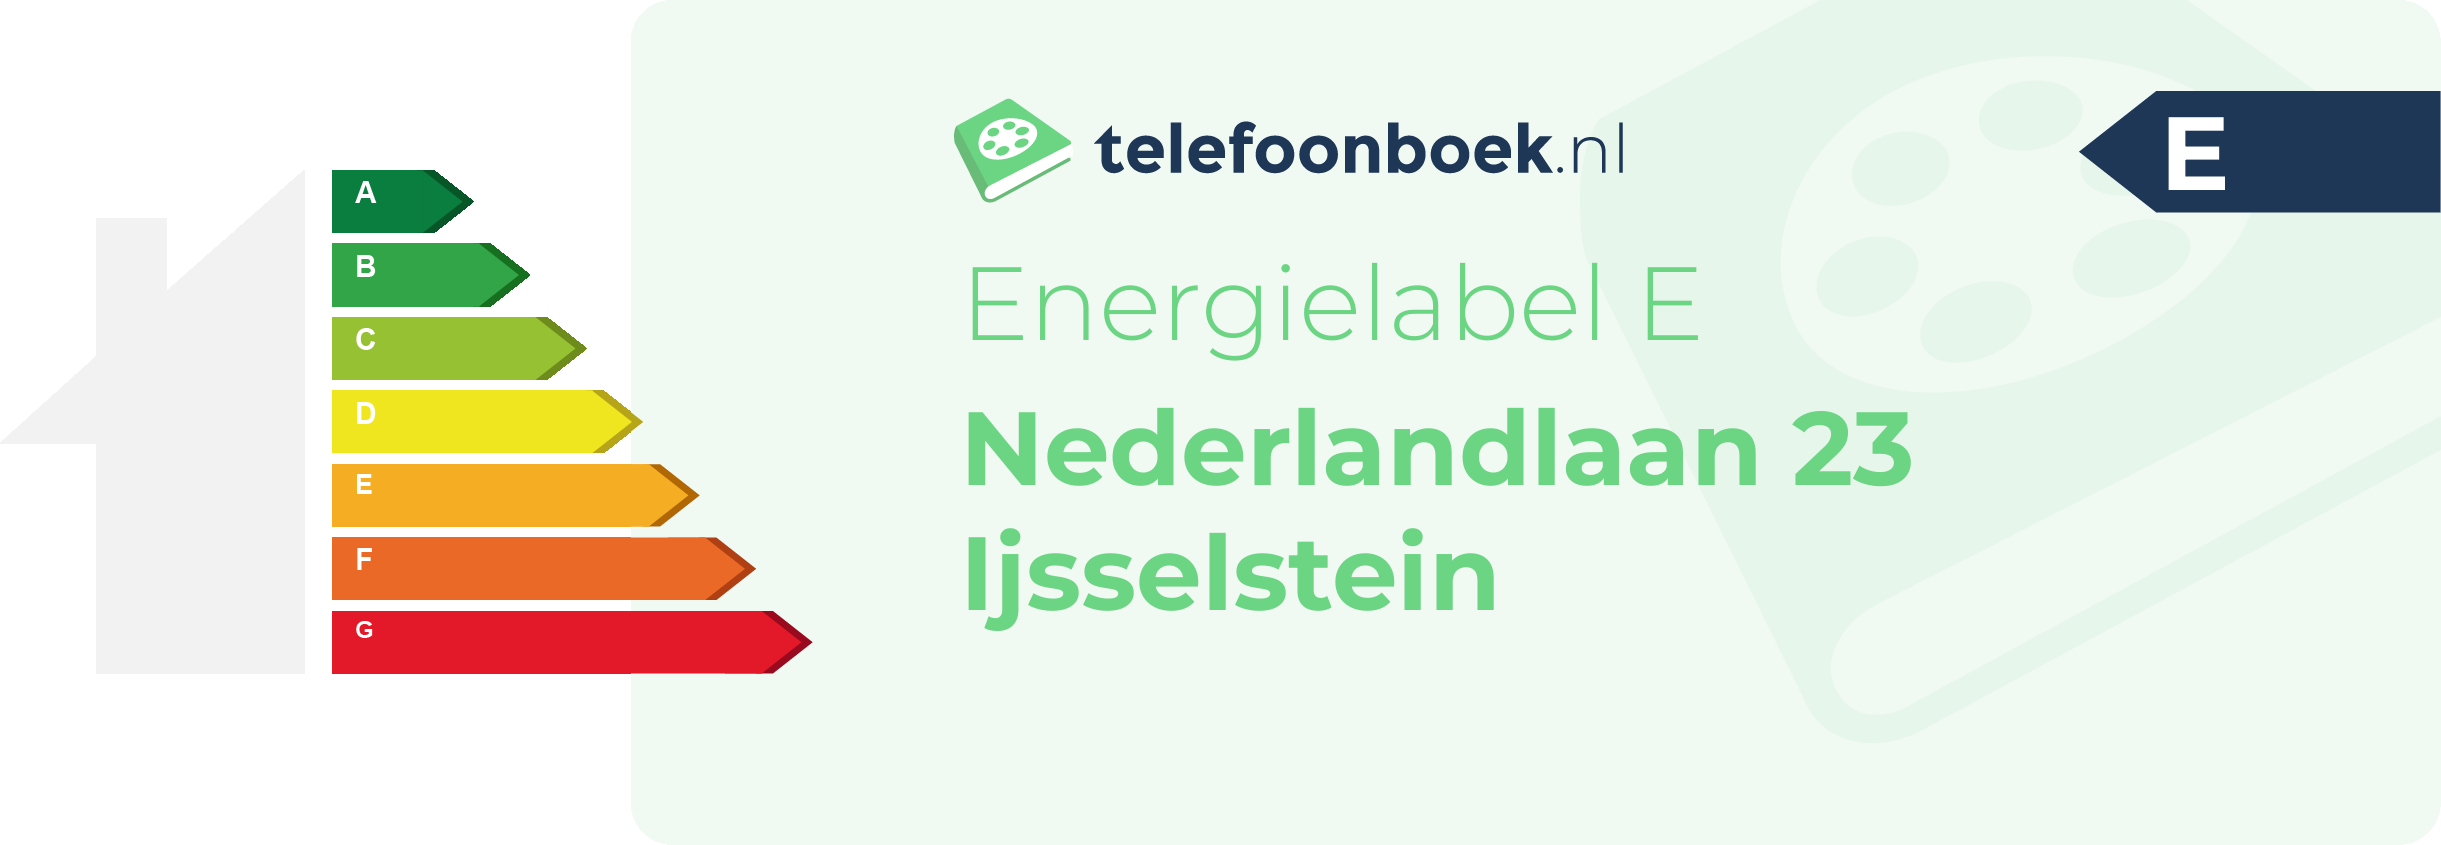 Energielabel Nederlandlaan 23 Ijsselstein